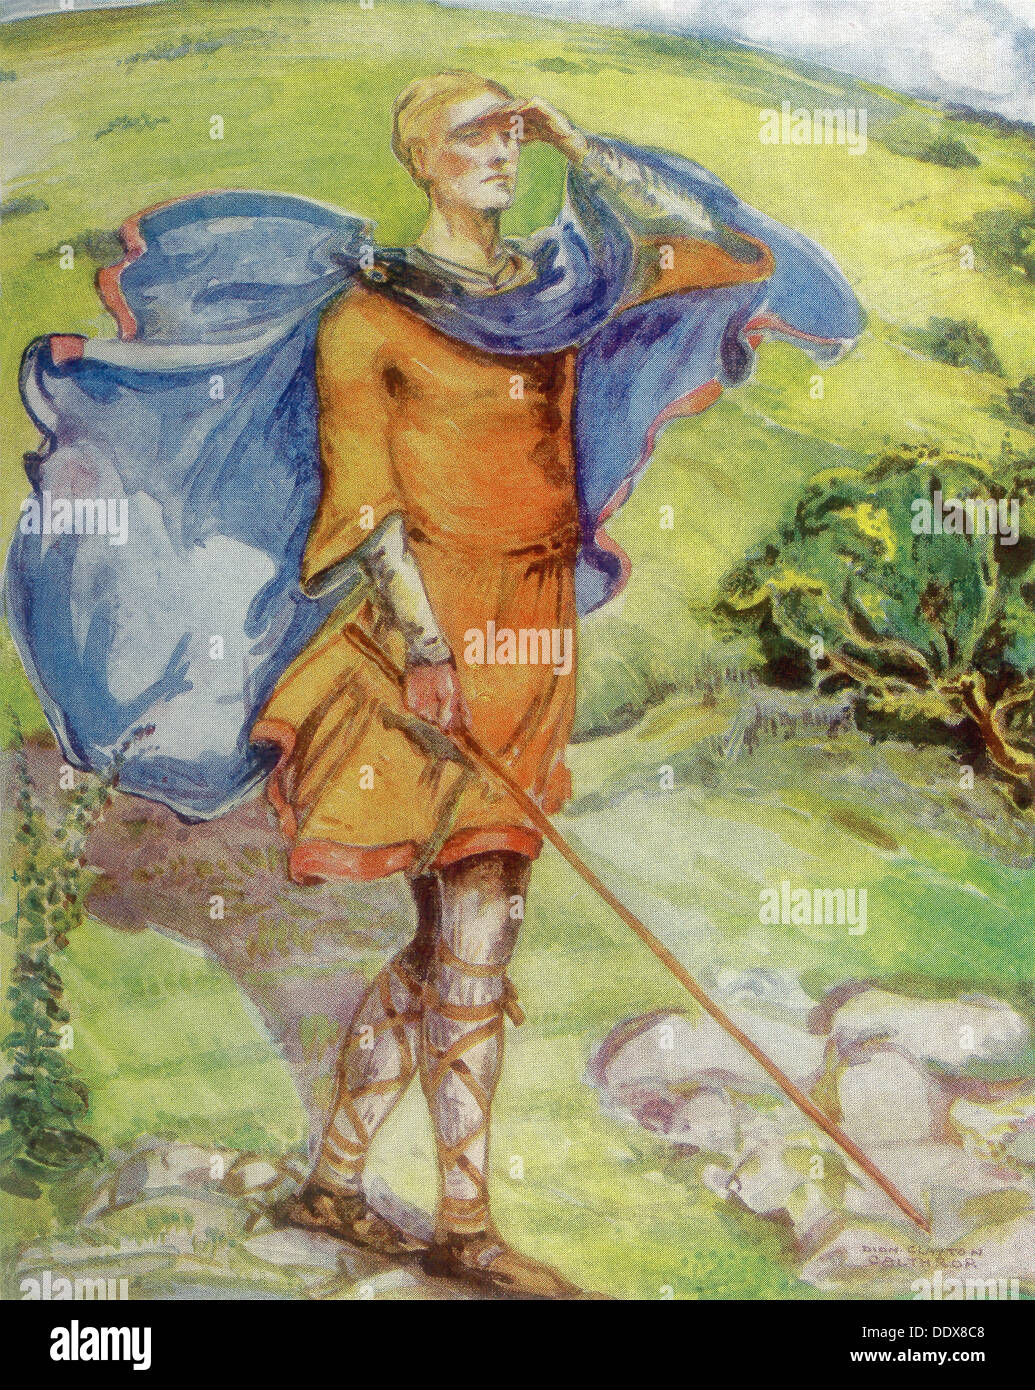 Un anglais à l'époque de William (1066-1087) porte une cape, lanières de cuir, et une tunique de son corps comme un jersey. Banque D'Images